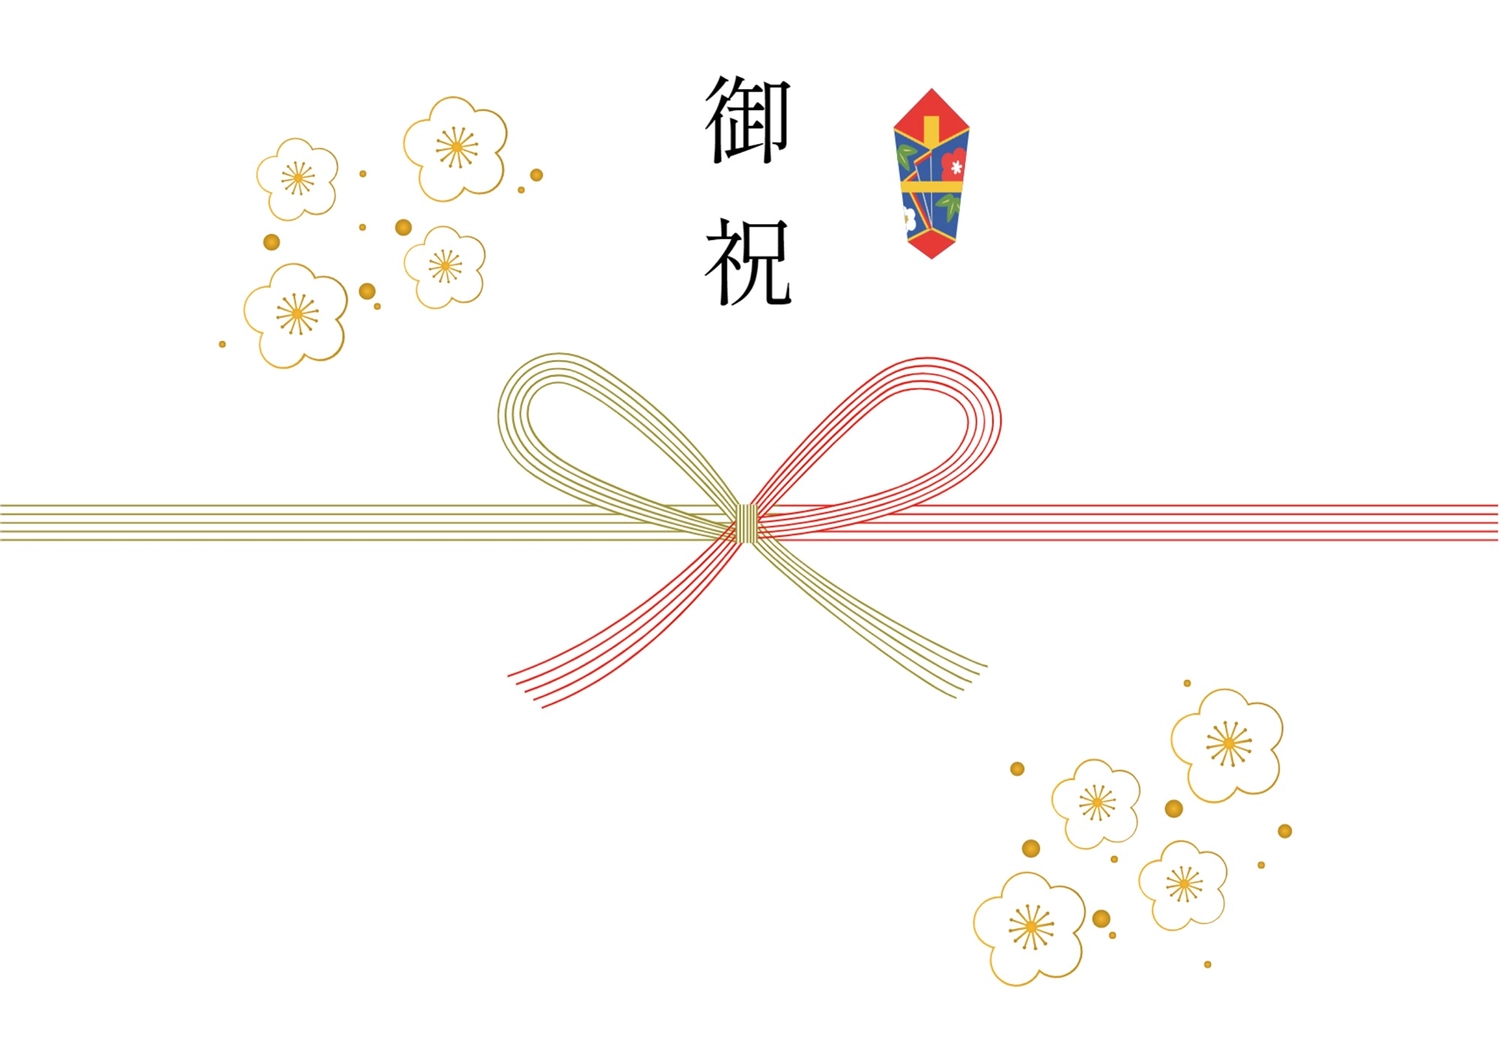 御祝, noshigami, gift-giving, Opening, Sales promotion tool template